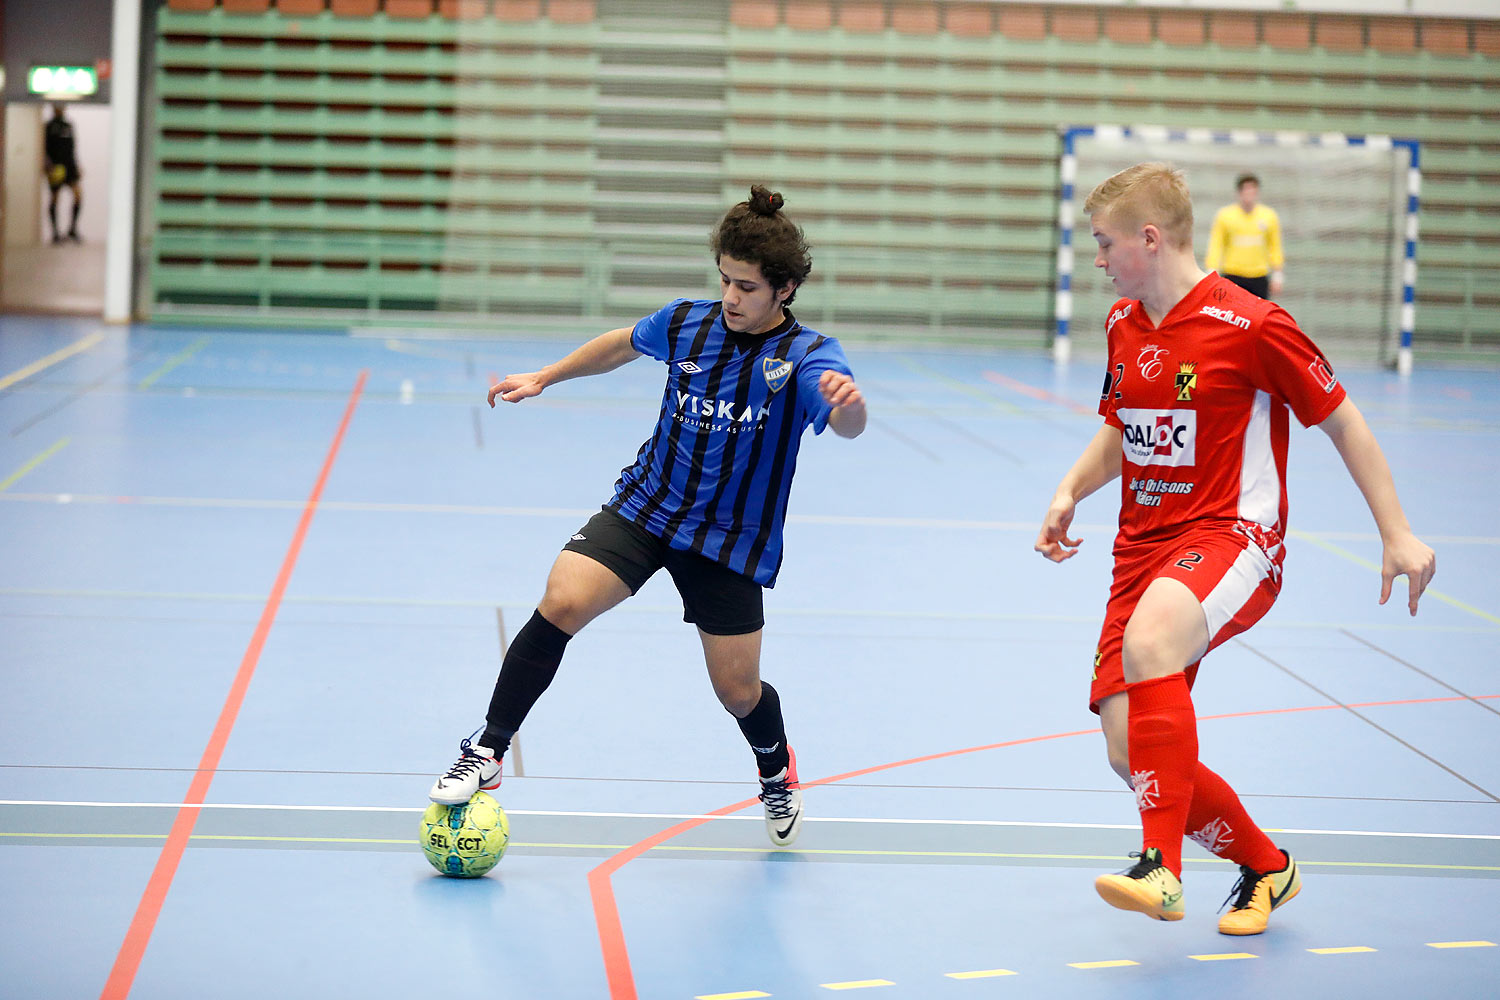 Skövde Futsalcup Herrjuniorer Ulricehamns IFK-Töreboda IK,herr,Arena Skövde,Skövde,Sverige,Skövde Futsalcup 2016,Futsal,2016,141992